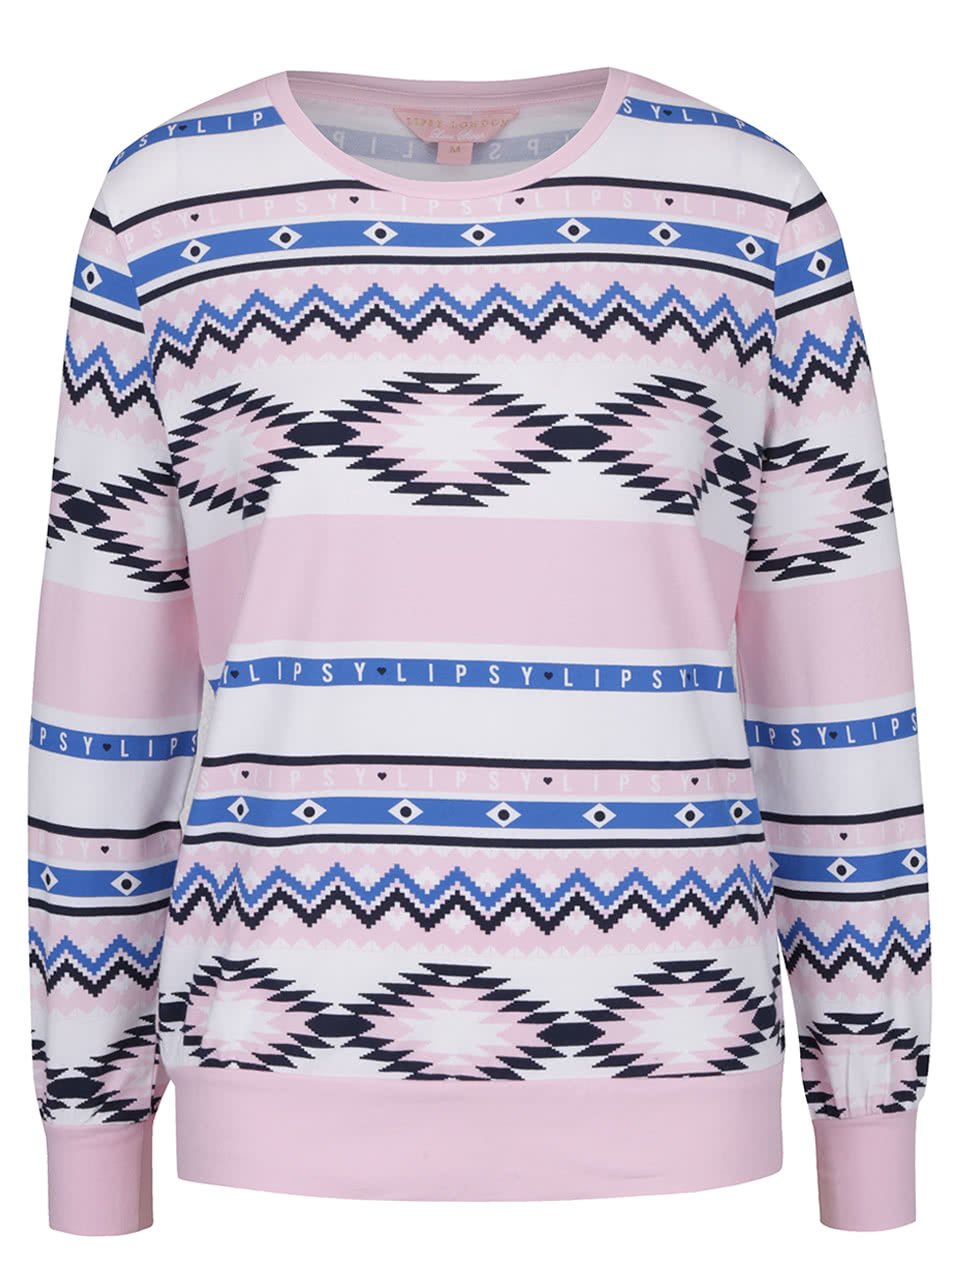 Modro-růžový horní díl pyžama Lipsy